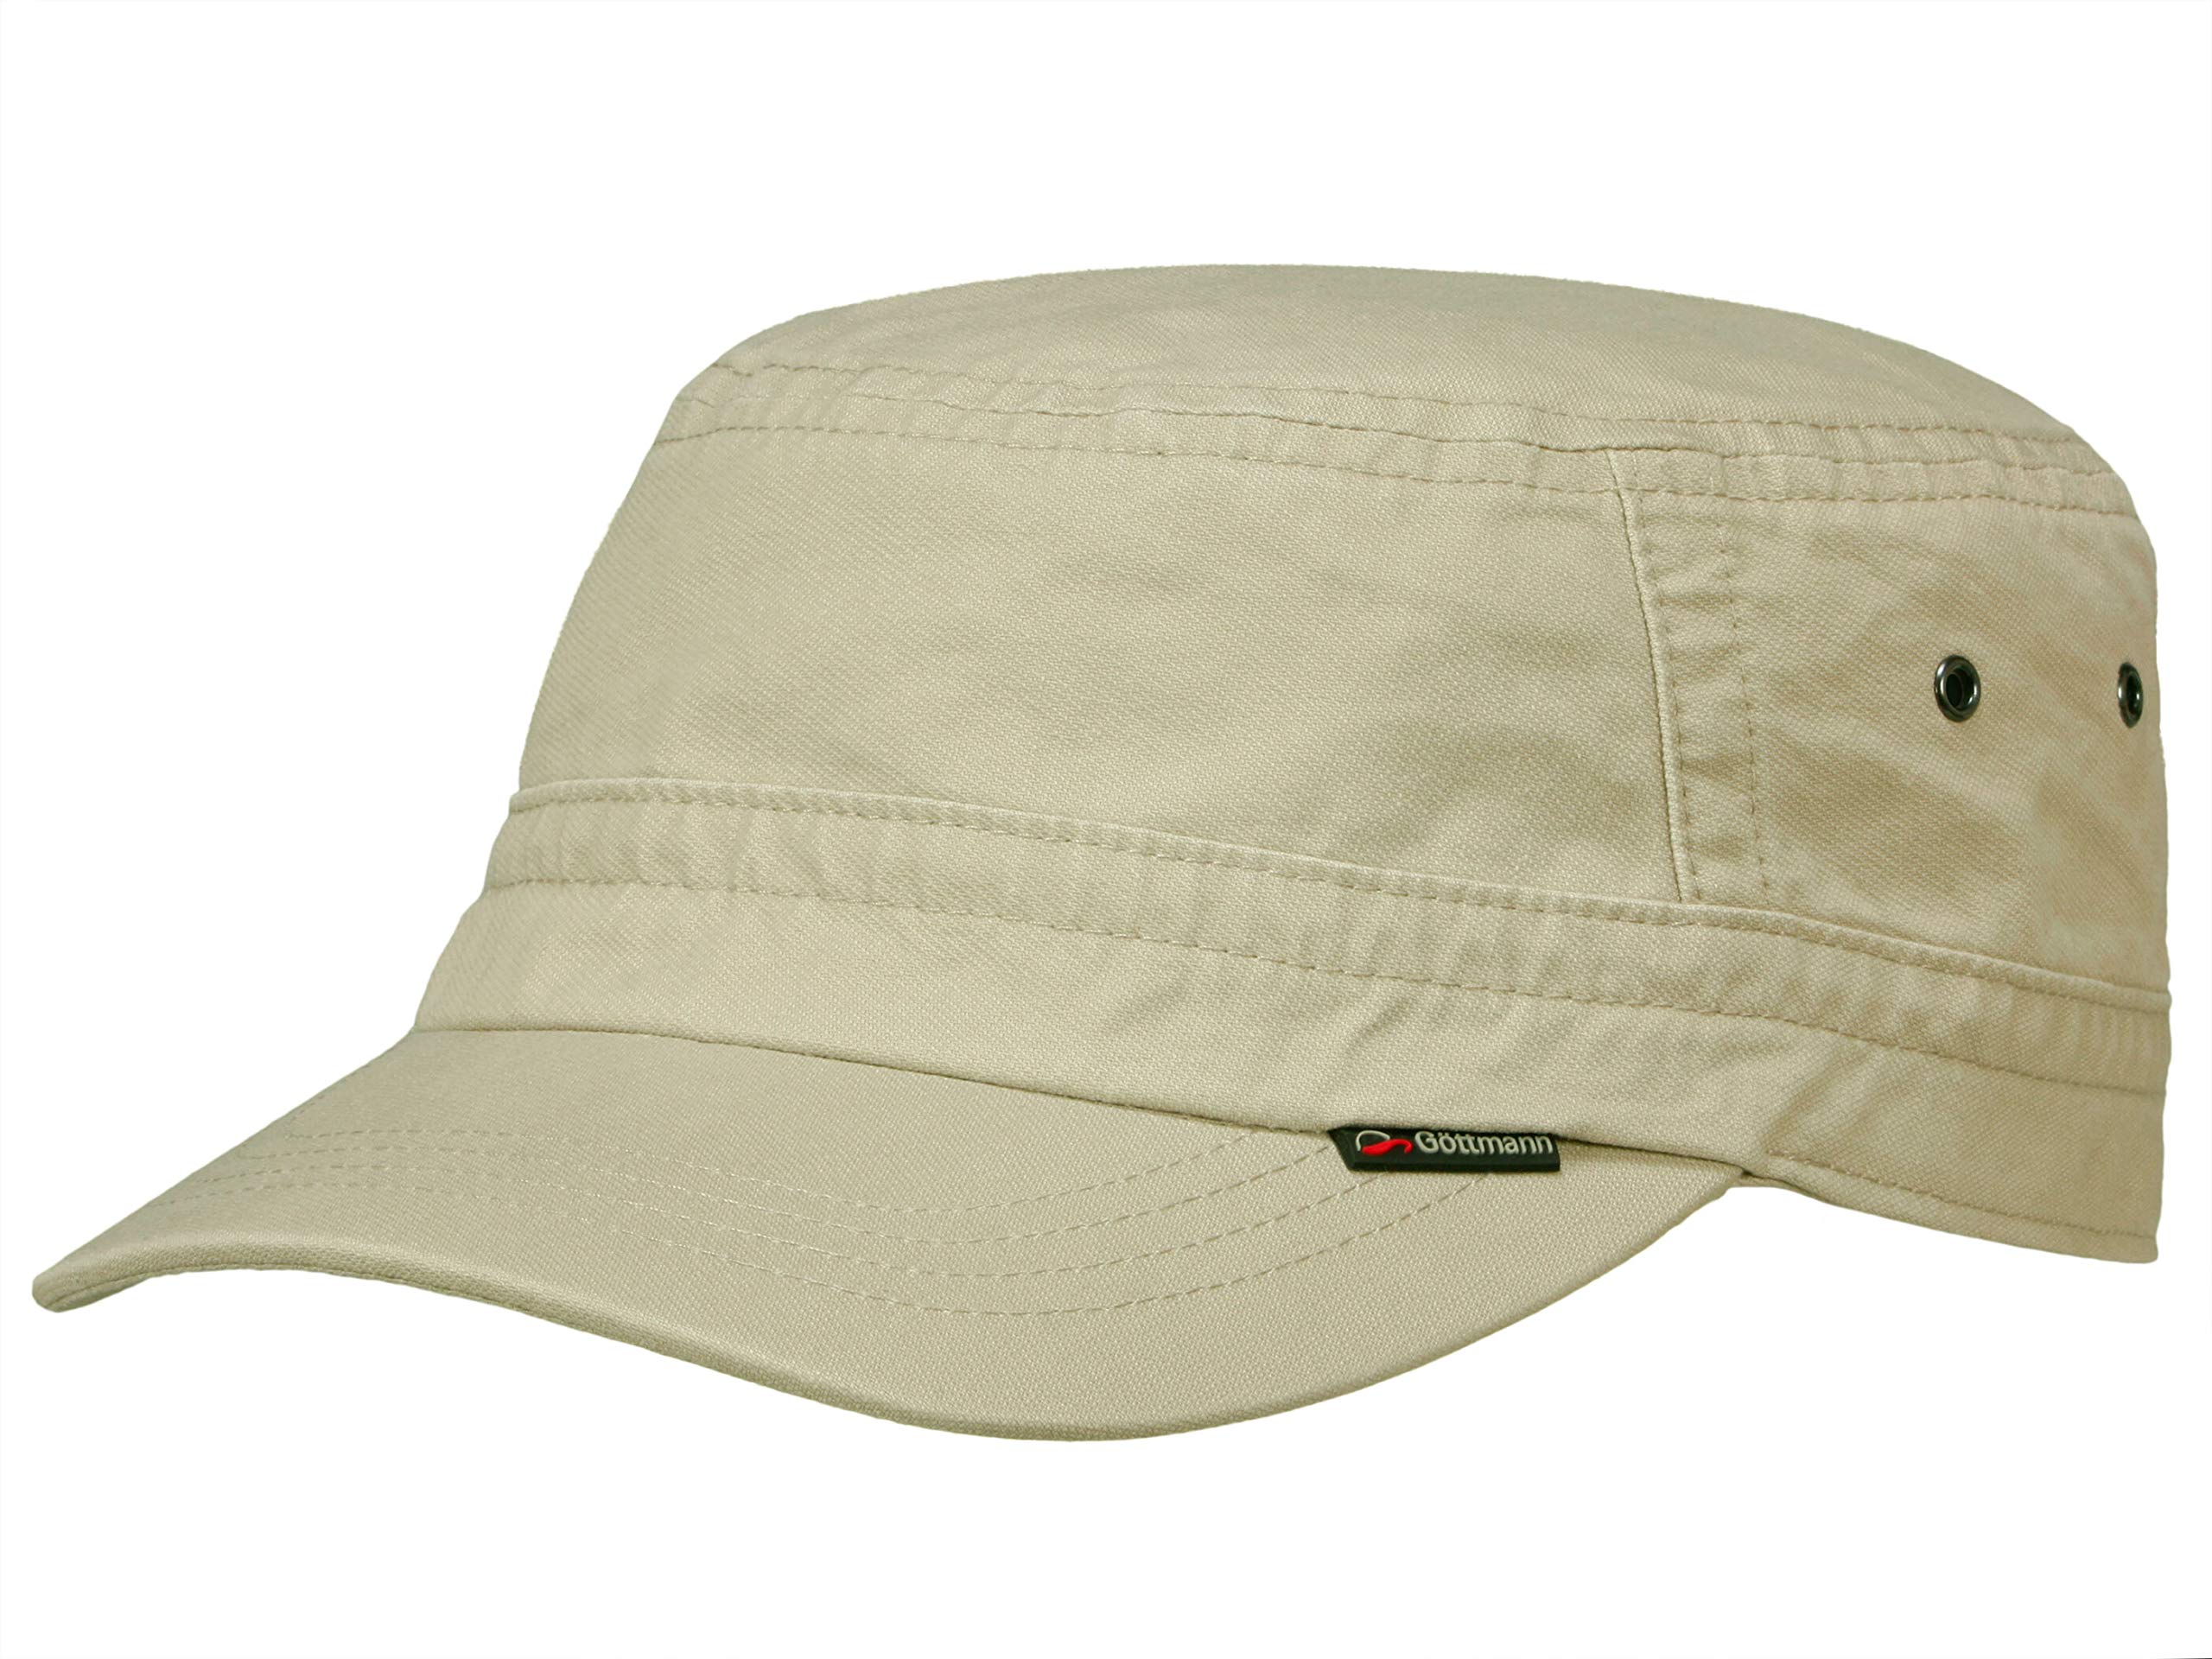 Göttmann Santiago Army Cap mit UV-Schutz aus Baumwolle - Hellgrau (10) - 57 cm